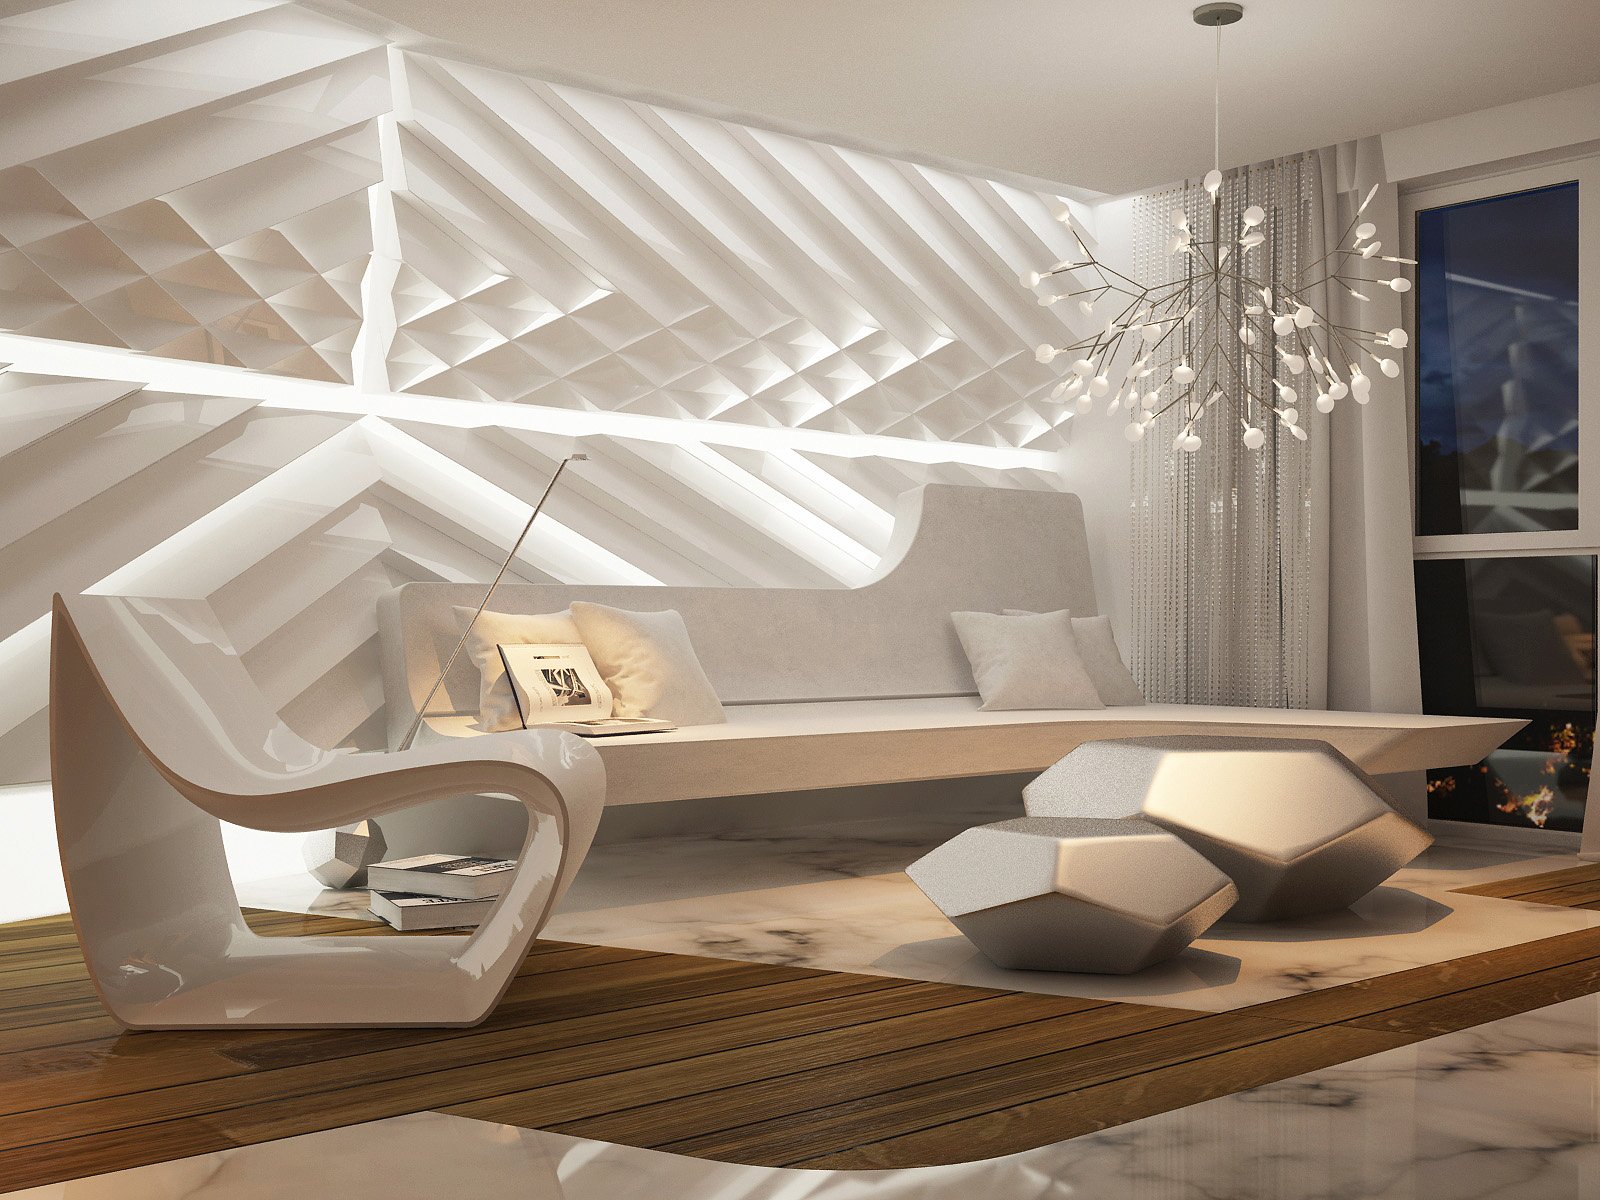 A white living room showcasing futuristic interior design.